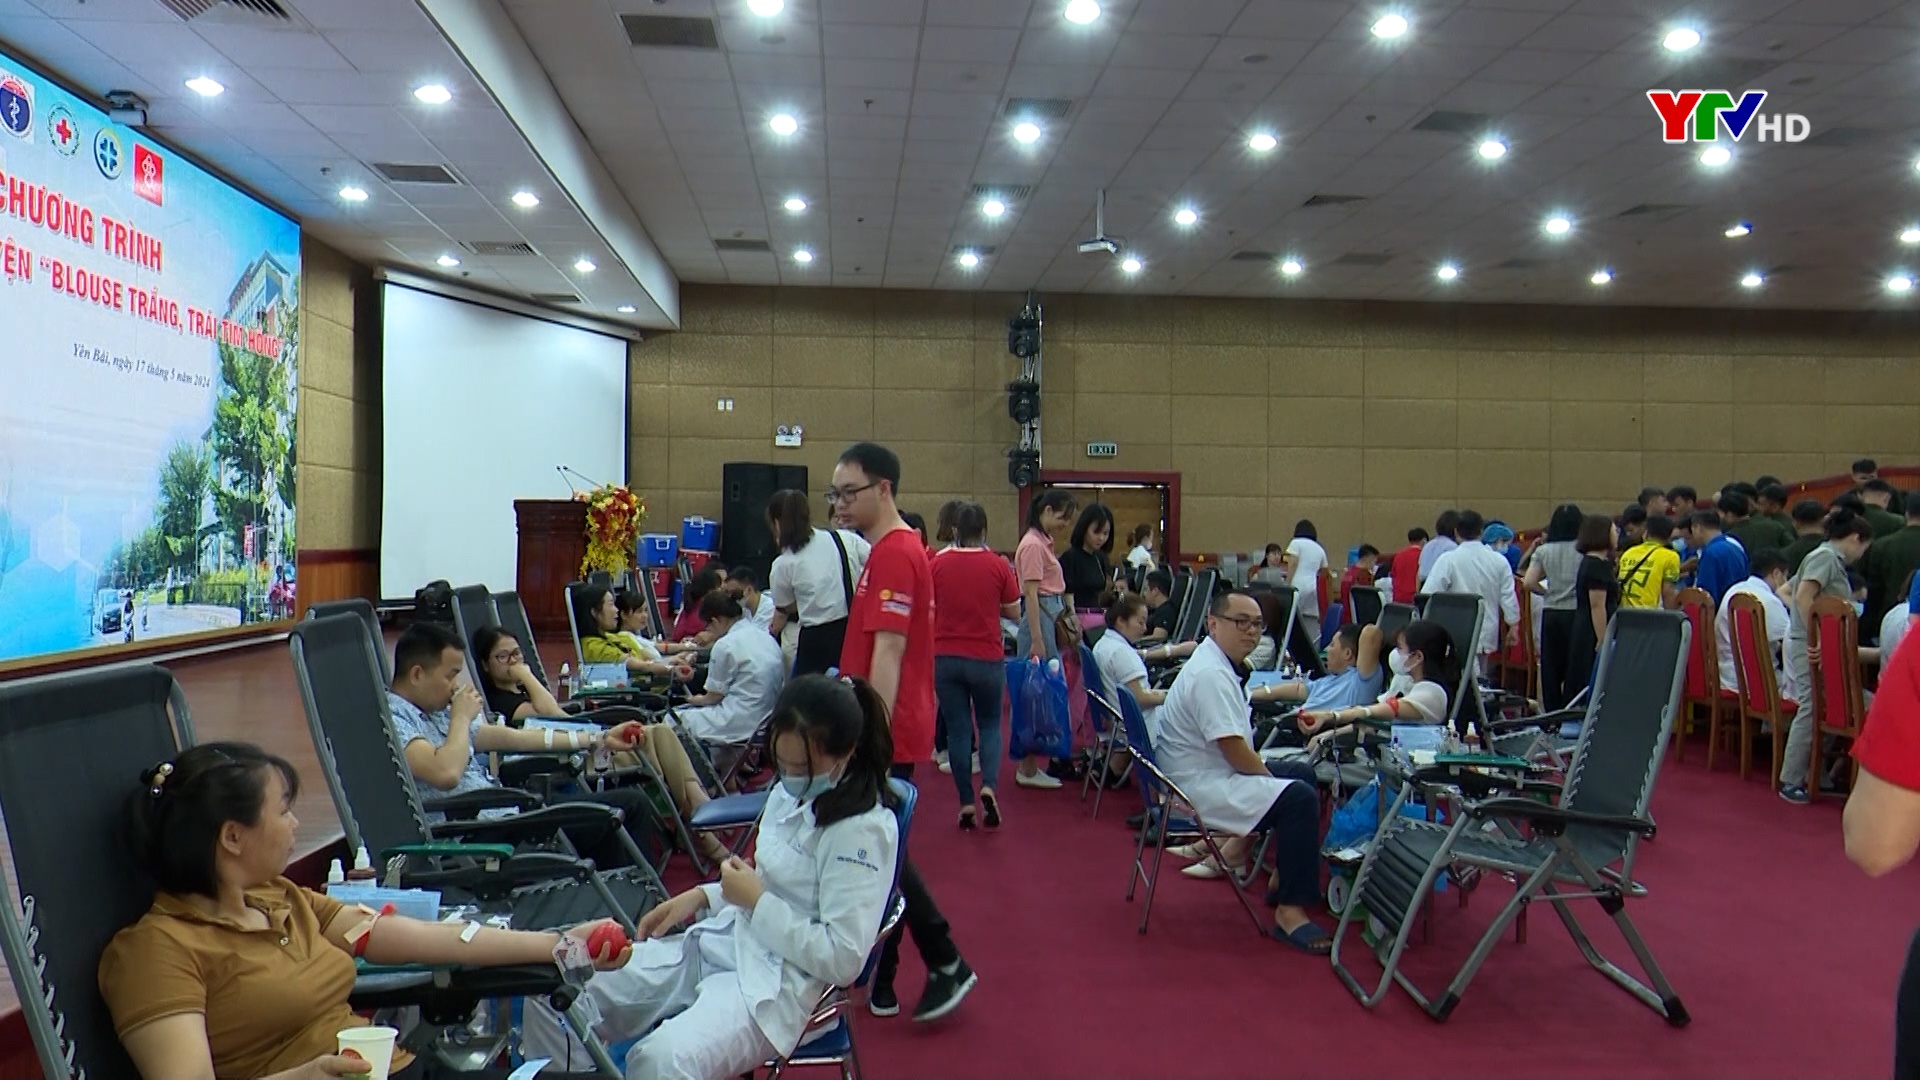 Trên 400 cán bộ, công chức, viên chức ngành Y tế Yên Bái tham gia hiến máu tình nguyện